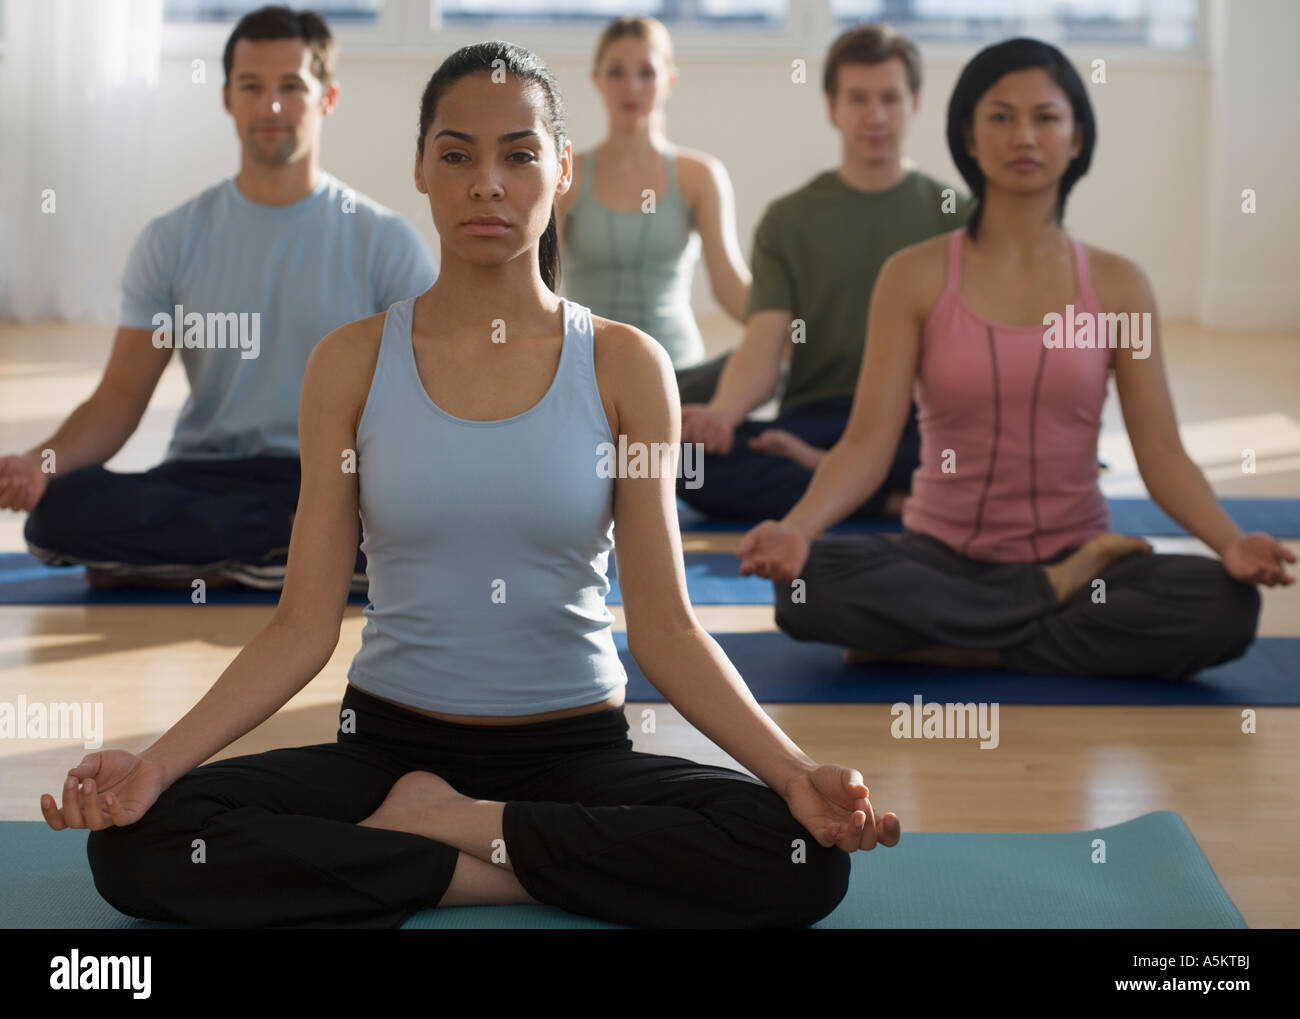 Gruppe von Menschen, die Yoga praktizieren Stockfoto